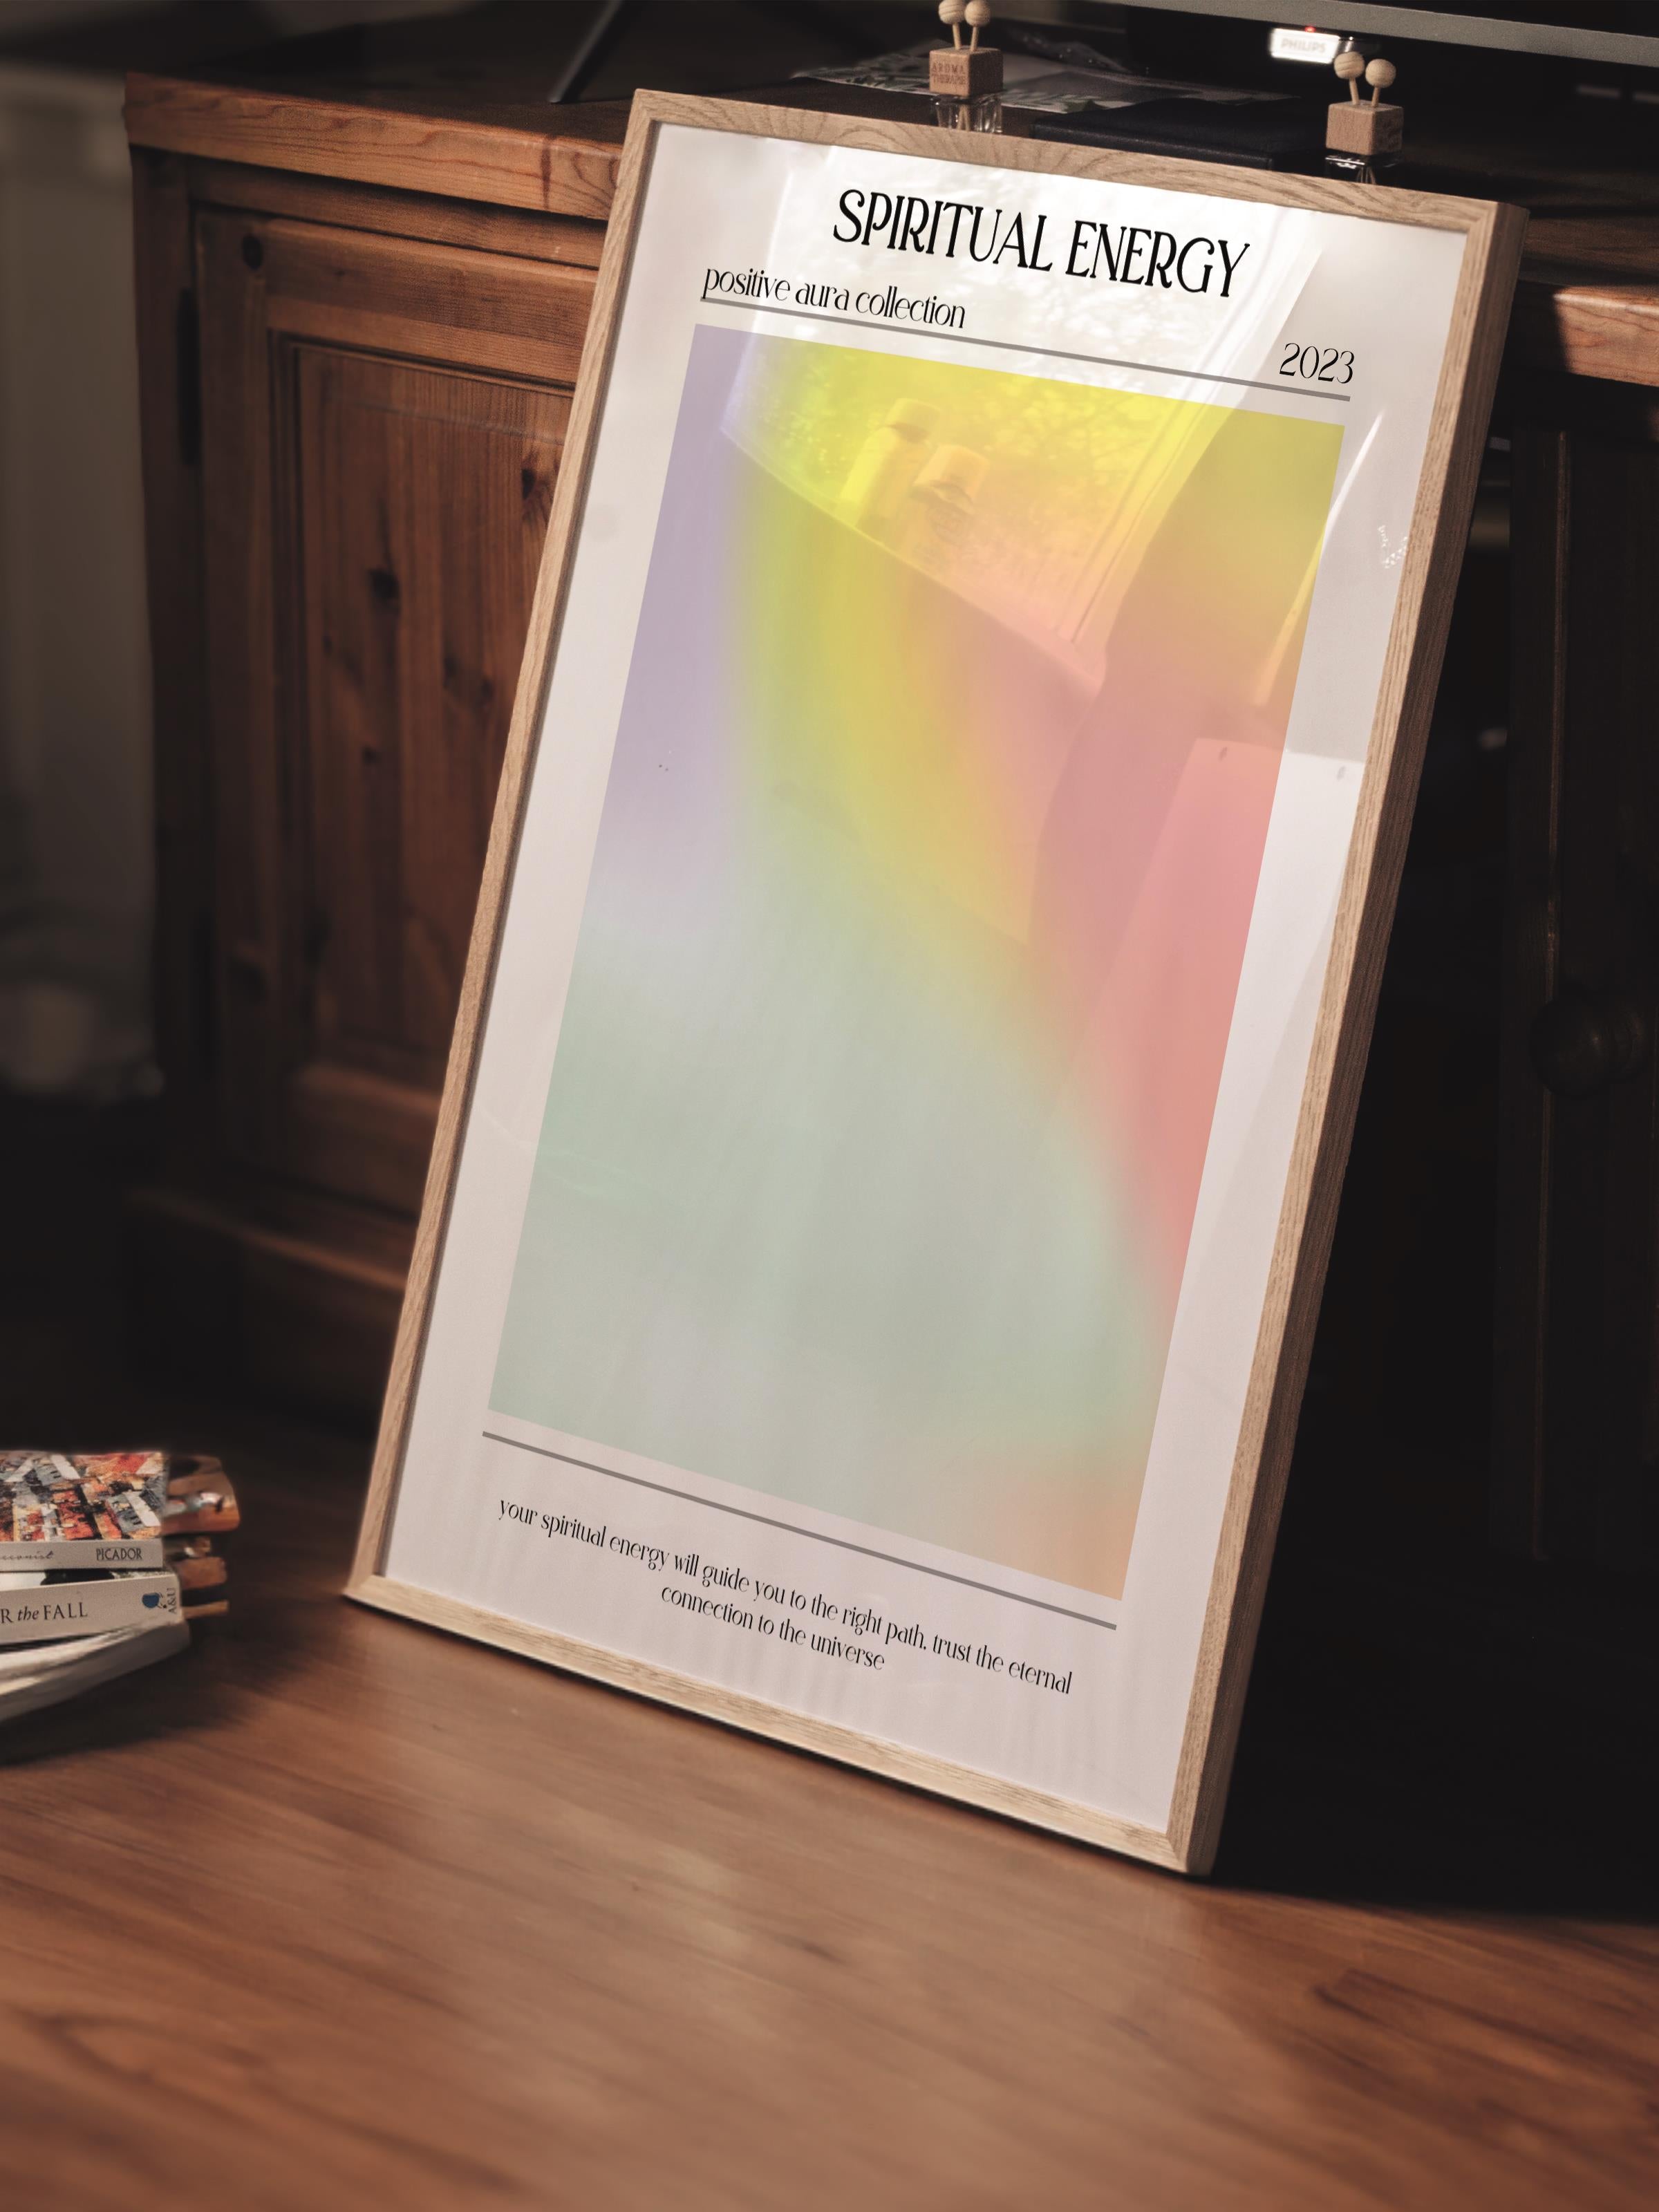 Çerçevesiz Poster, Aura Serisi NO:143 - Spritual Energy, Melek Numaraları, Renkli Poster